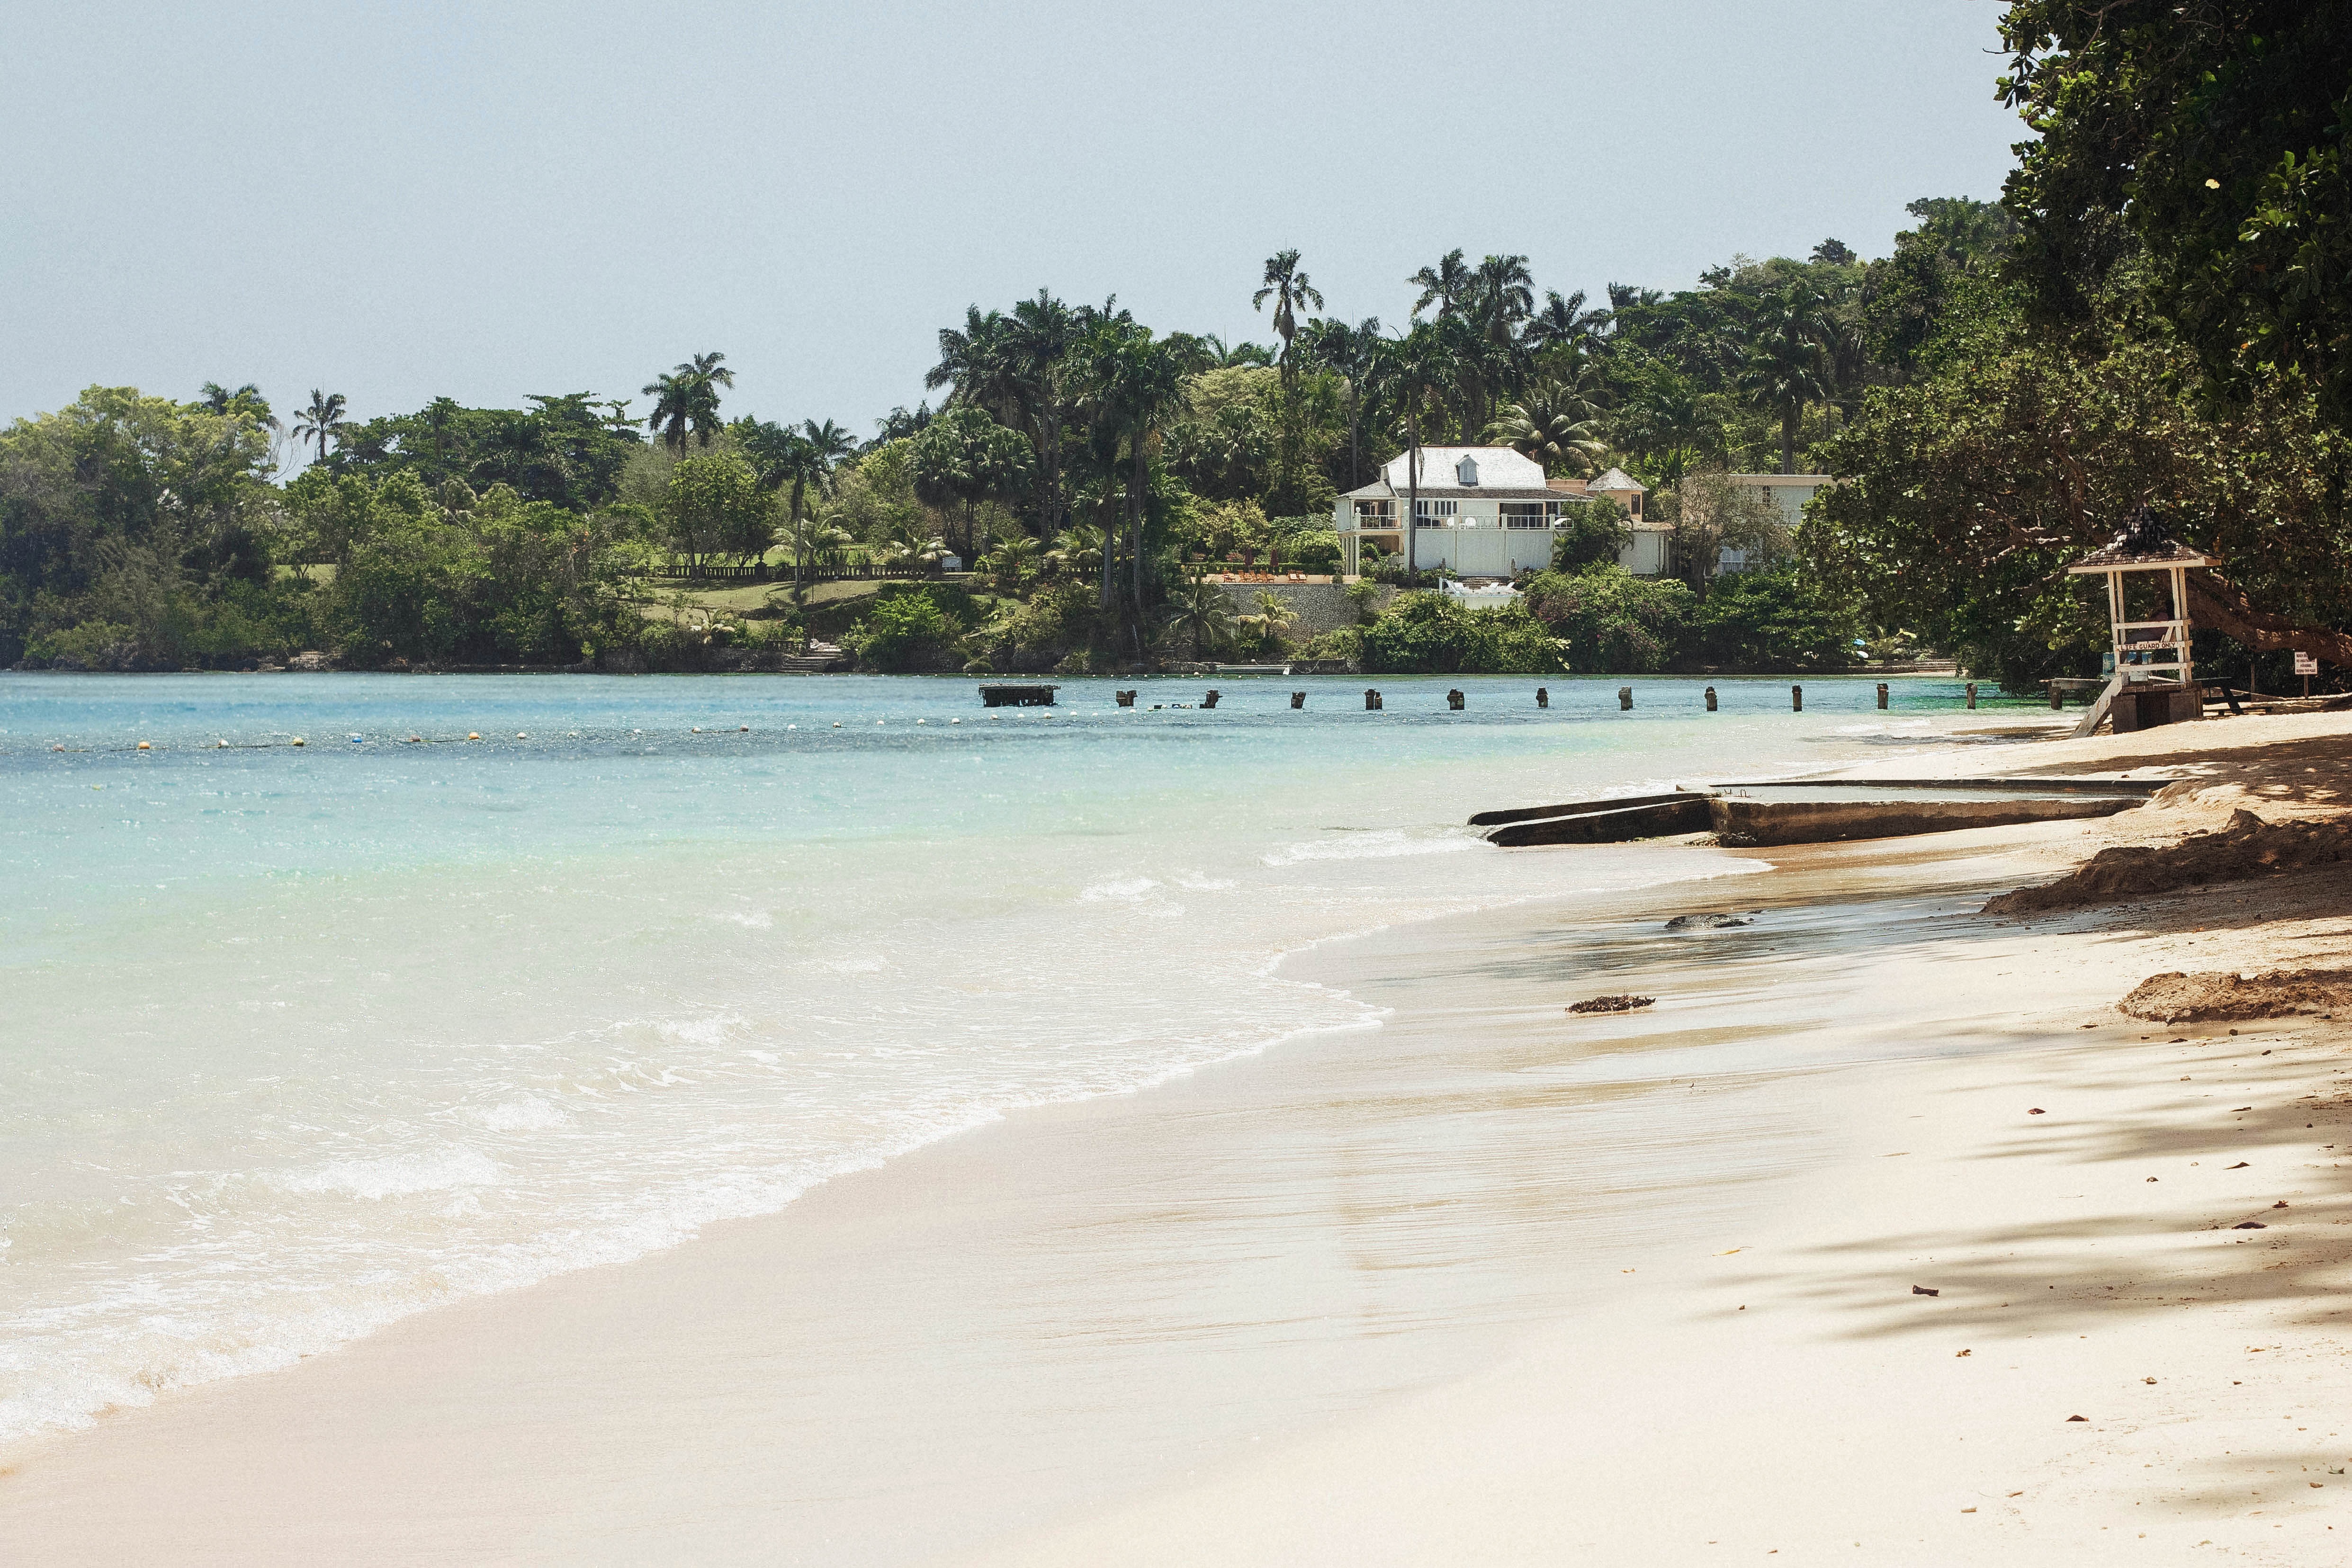 Jamaica beach photo by Lakeisha Bennett